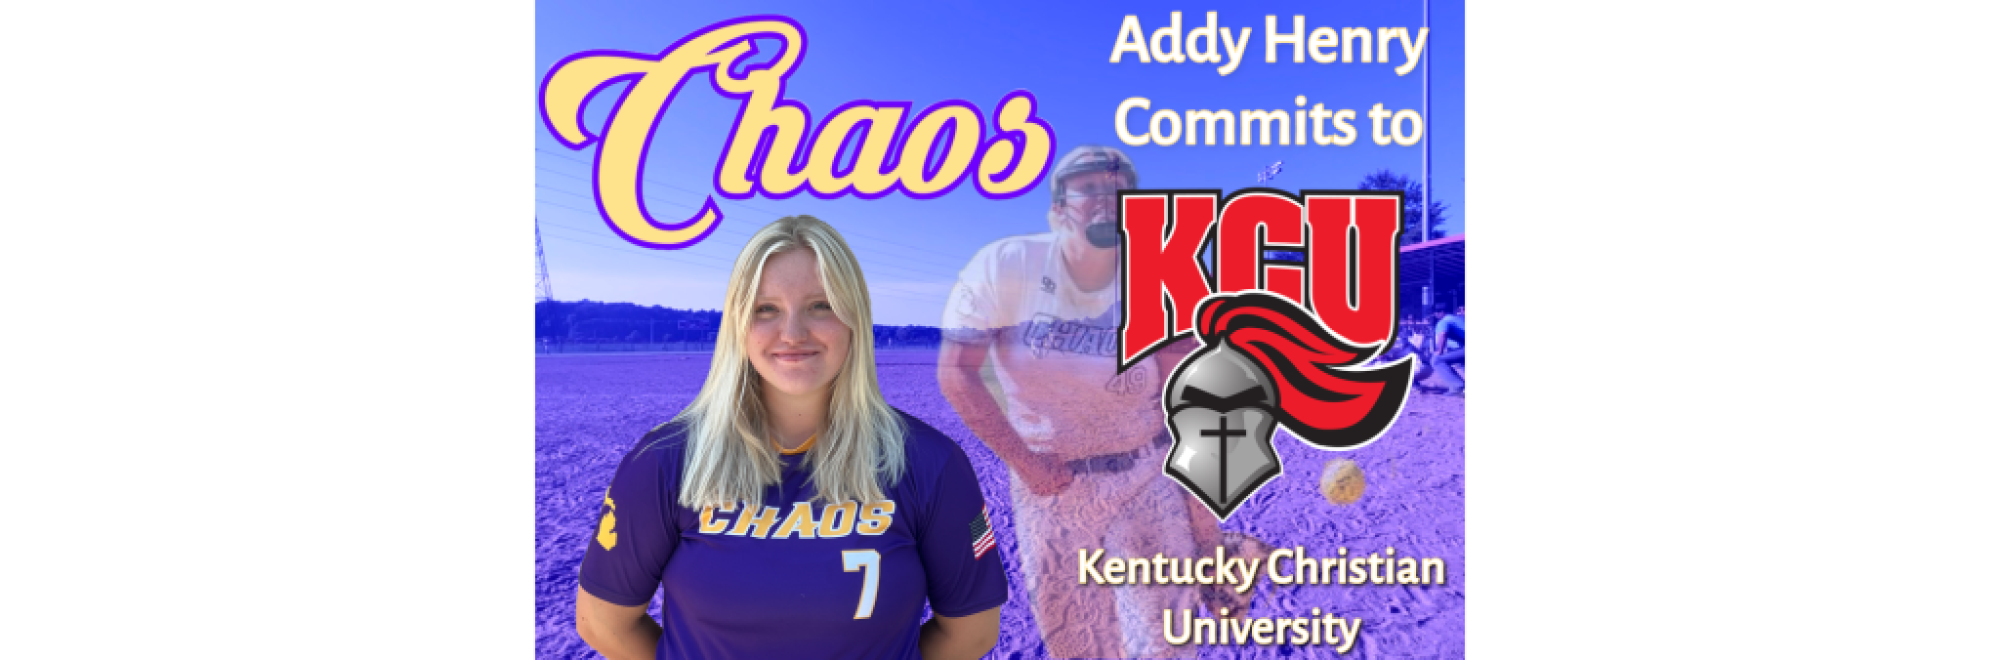 Addy Henry - Kentucky Christian University